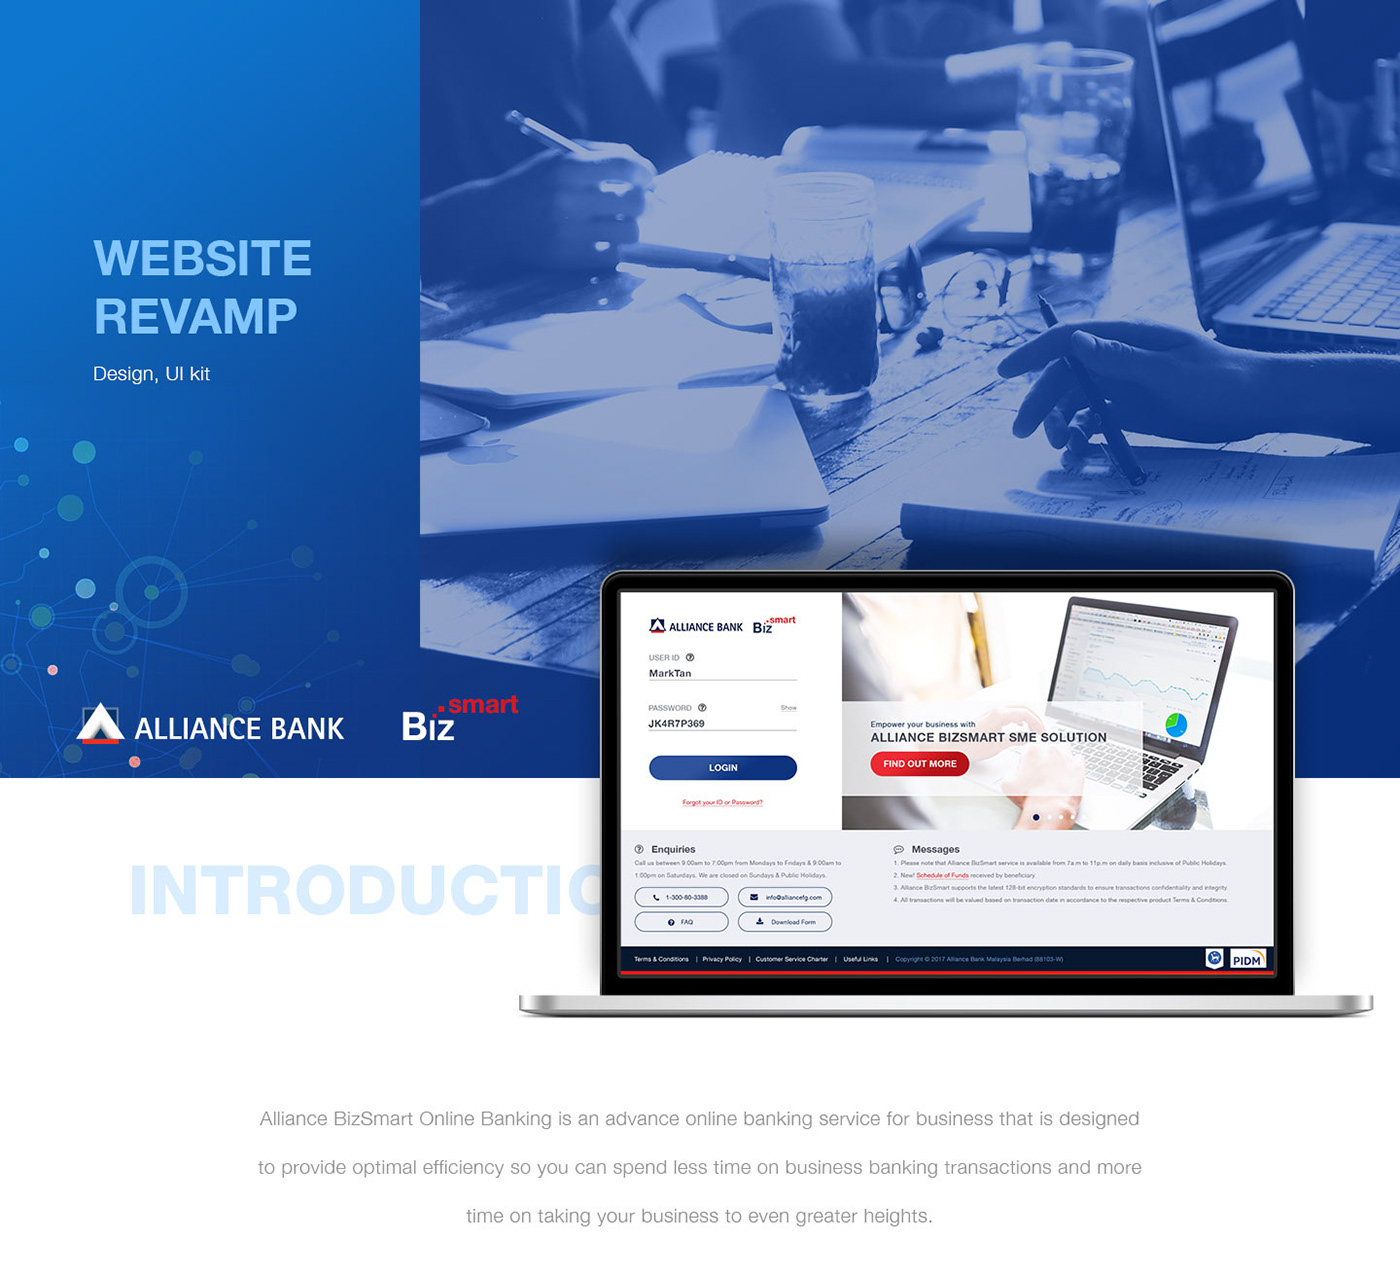 Bank alliance Website Design financial business